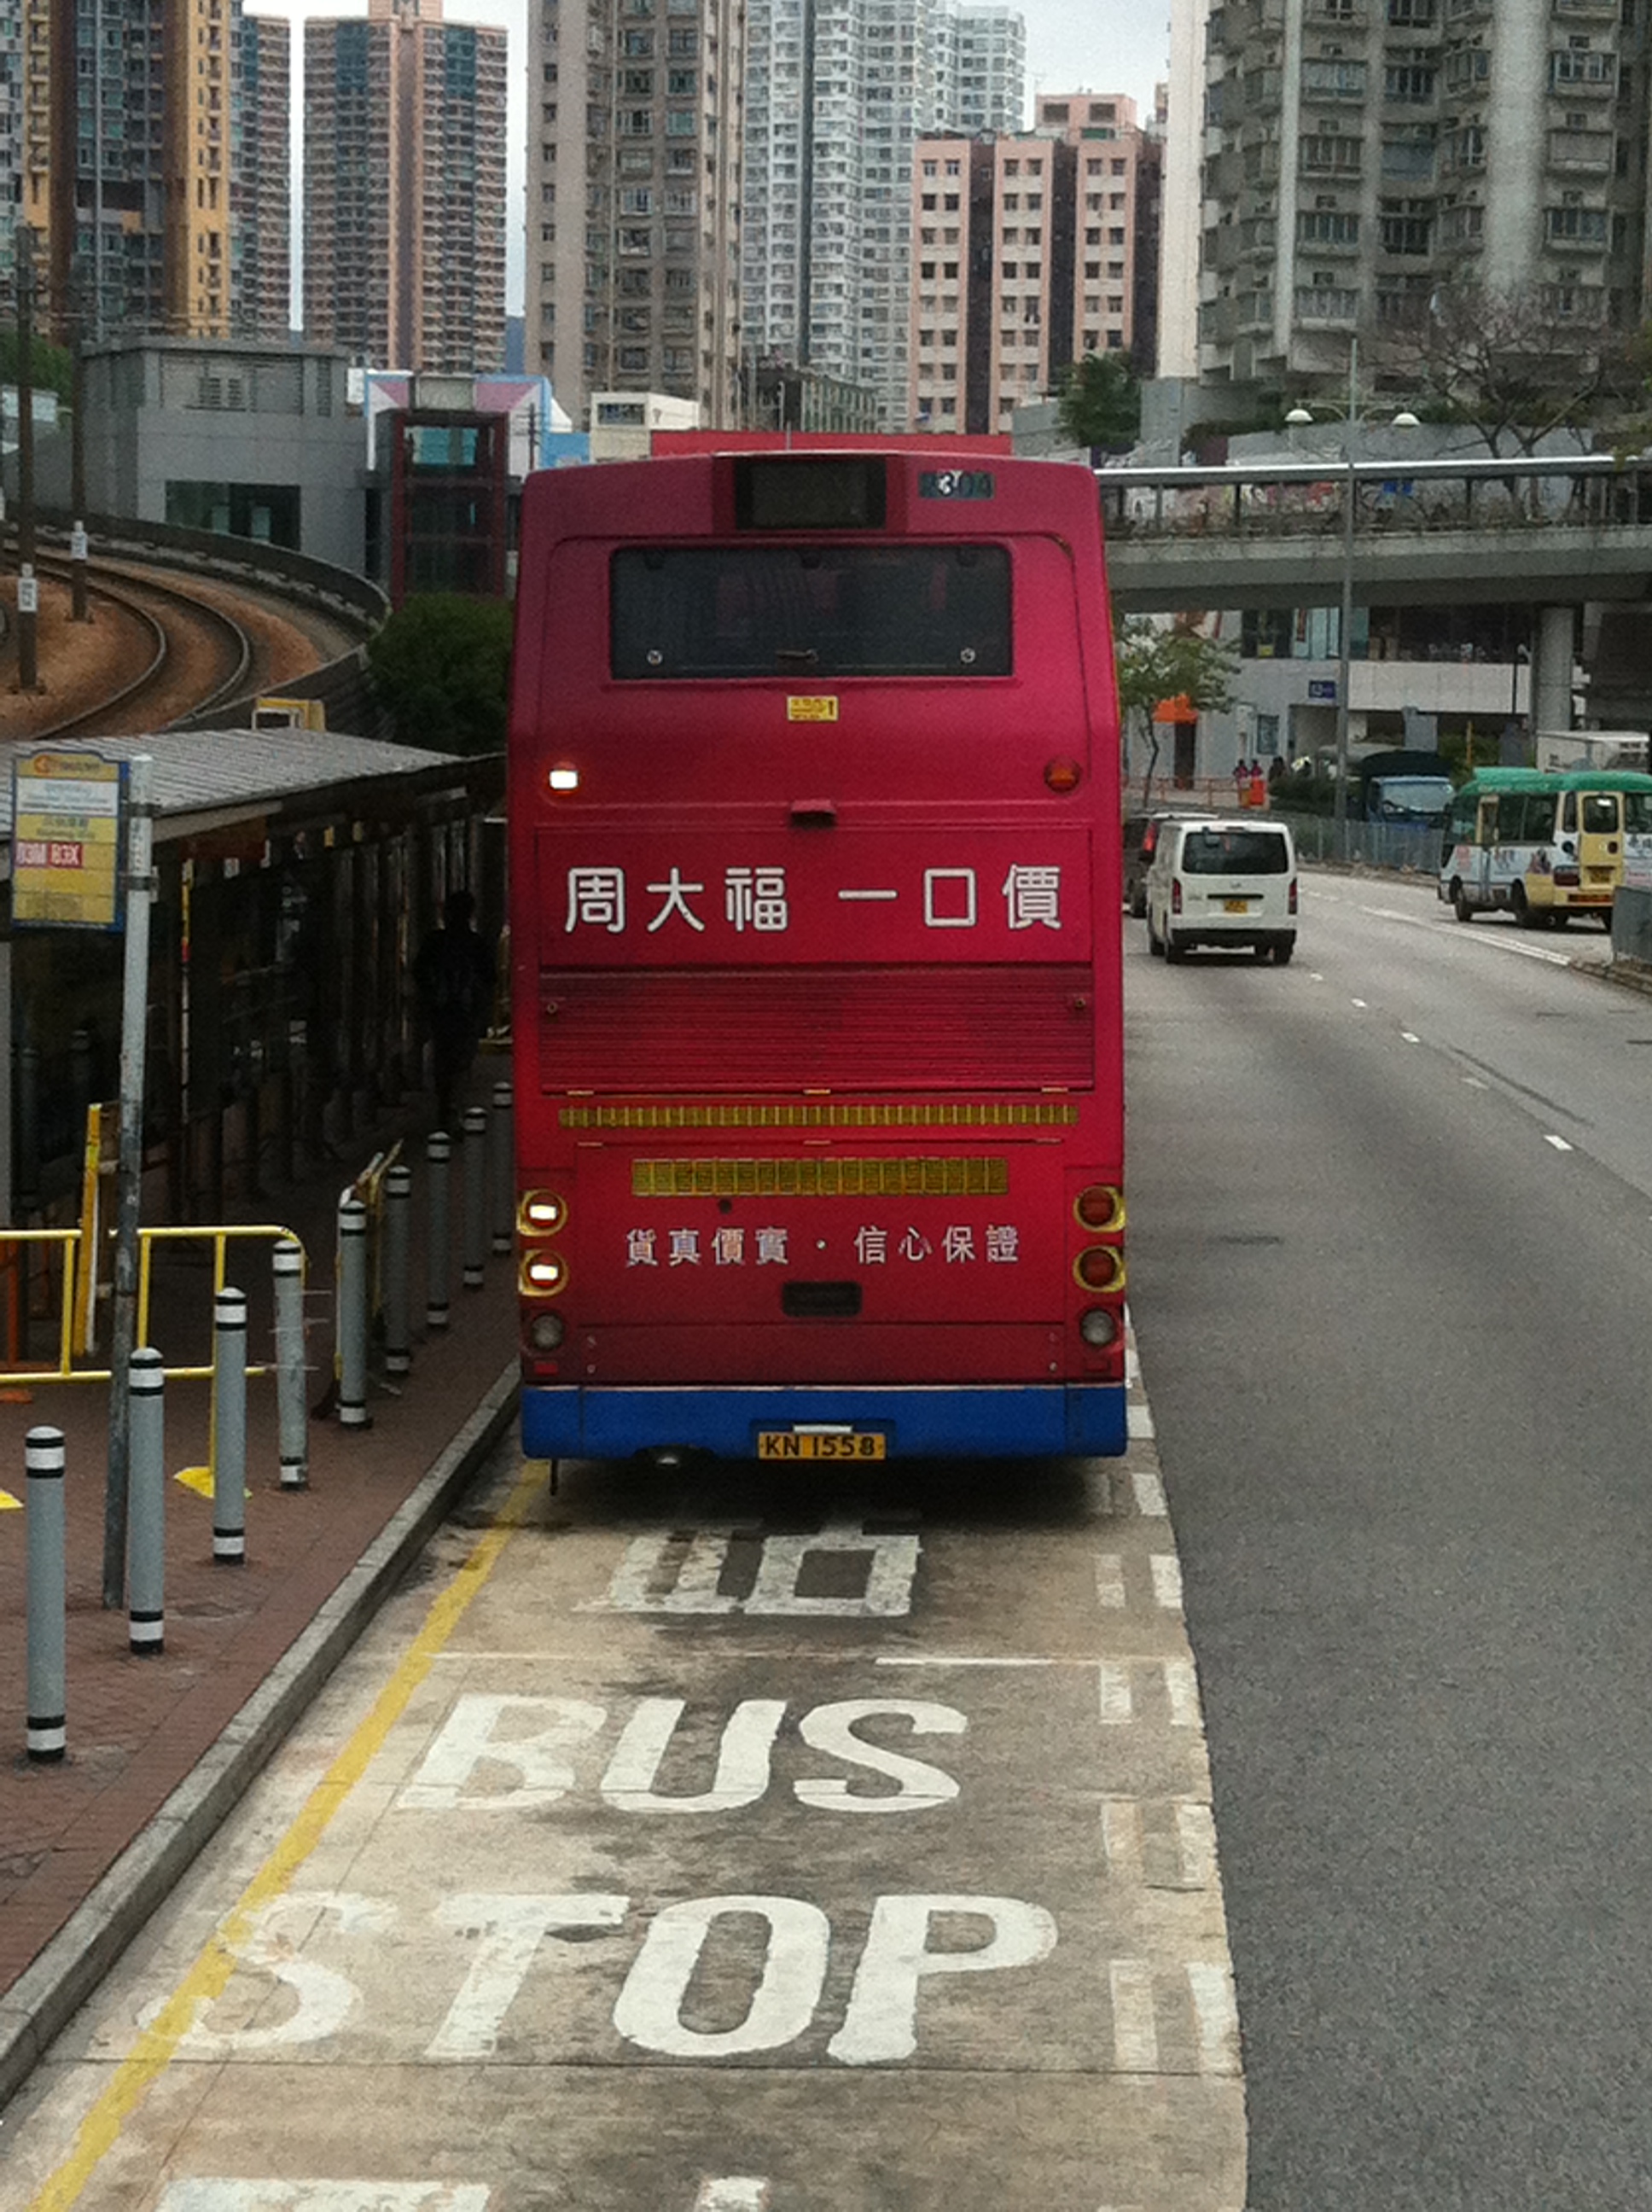 城巴B3X線 | 香港巴士大典 | FANDOM powered by Wikia